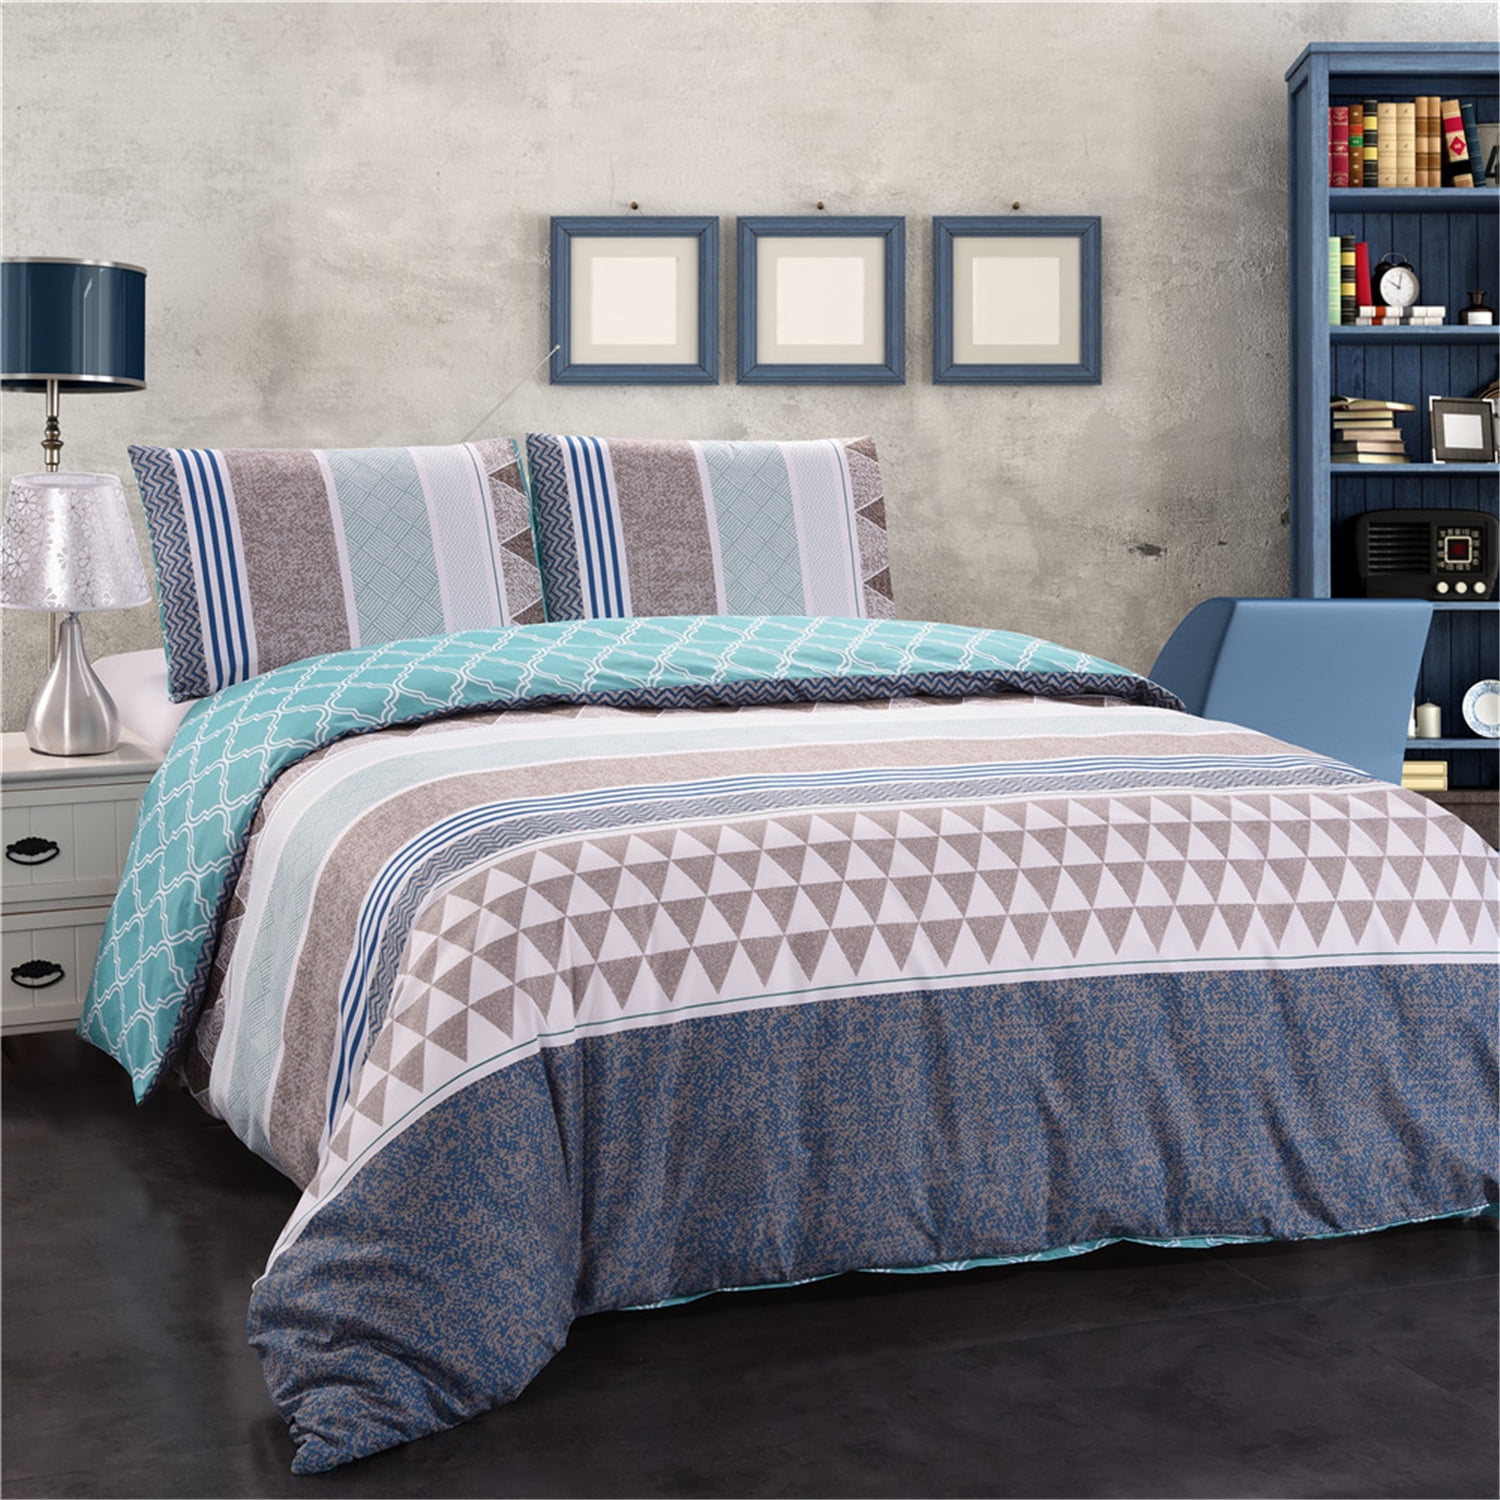 Details about   Cozy Bedding Sheet Set 4 PCs OR 6 PCs Egyptian Cotton US Full Size Stripe Colors 